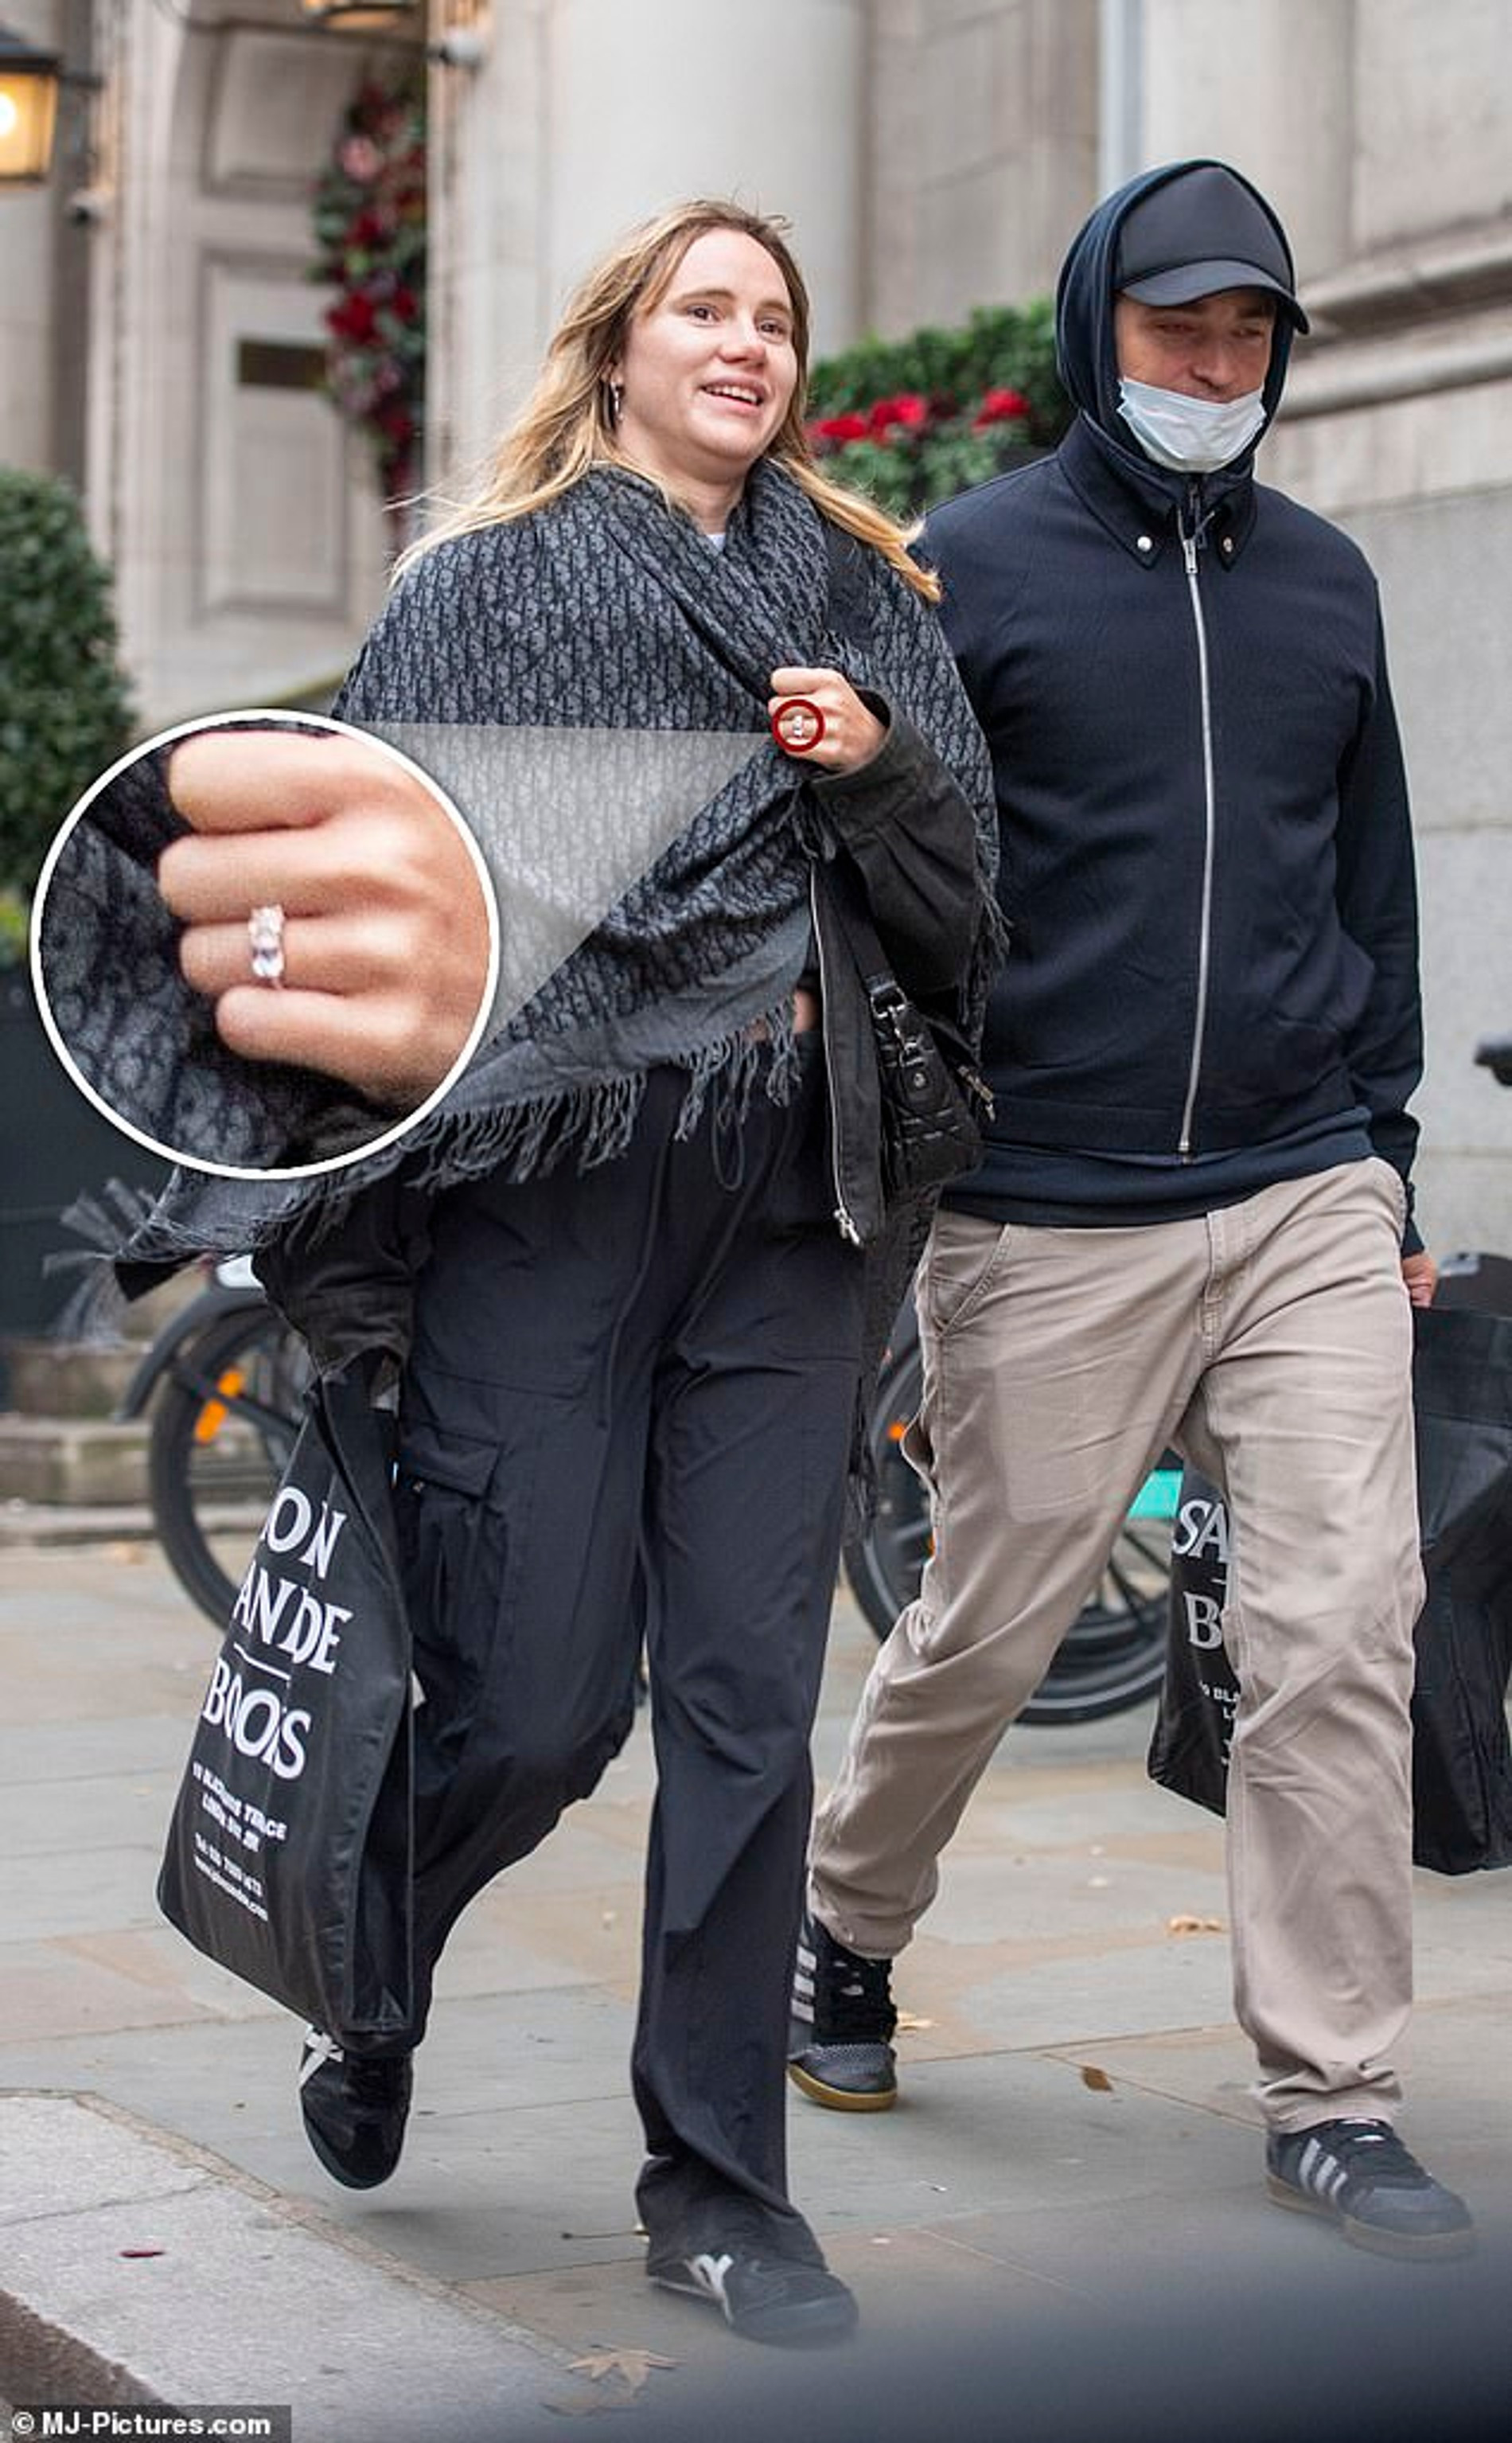 Сьюки Уотерхаус с помолвочным кольцом и Роберт Паттинсон. Фото: MJ-Pictures.com